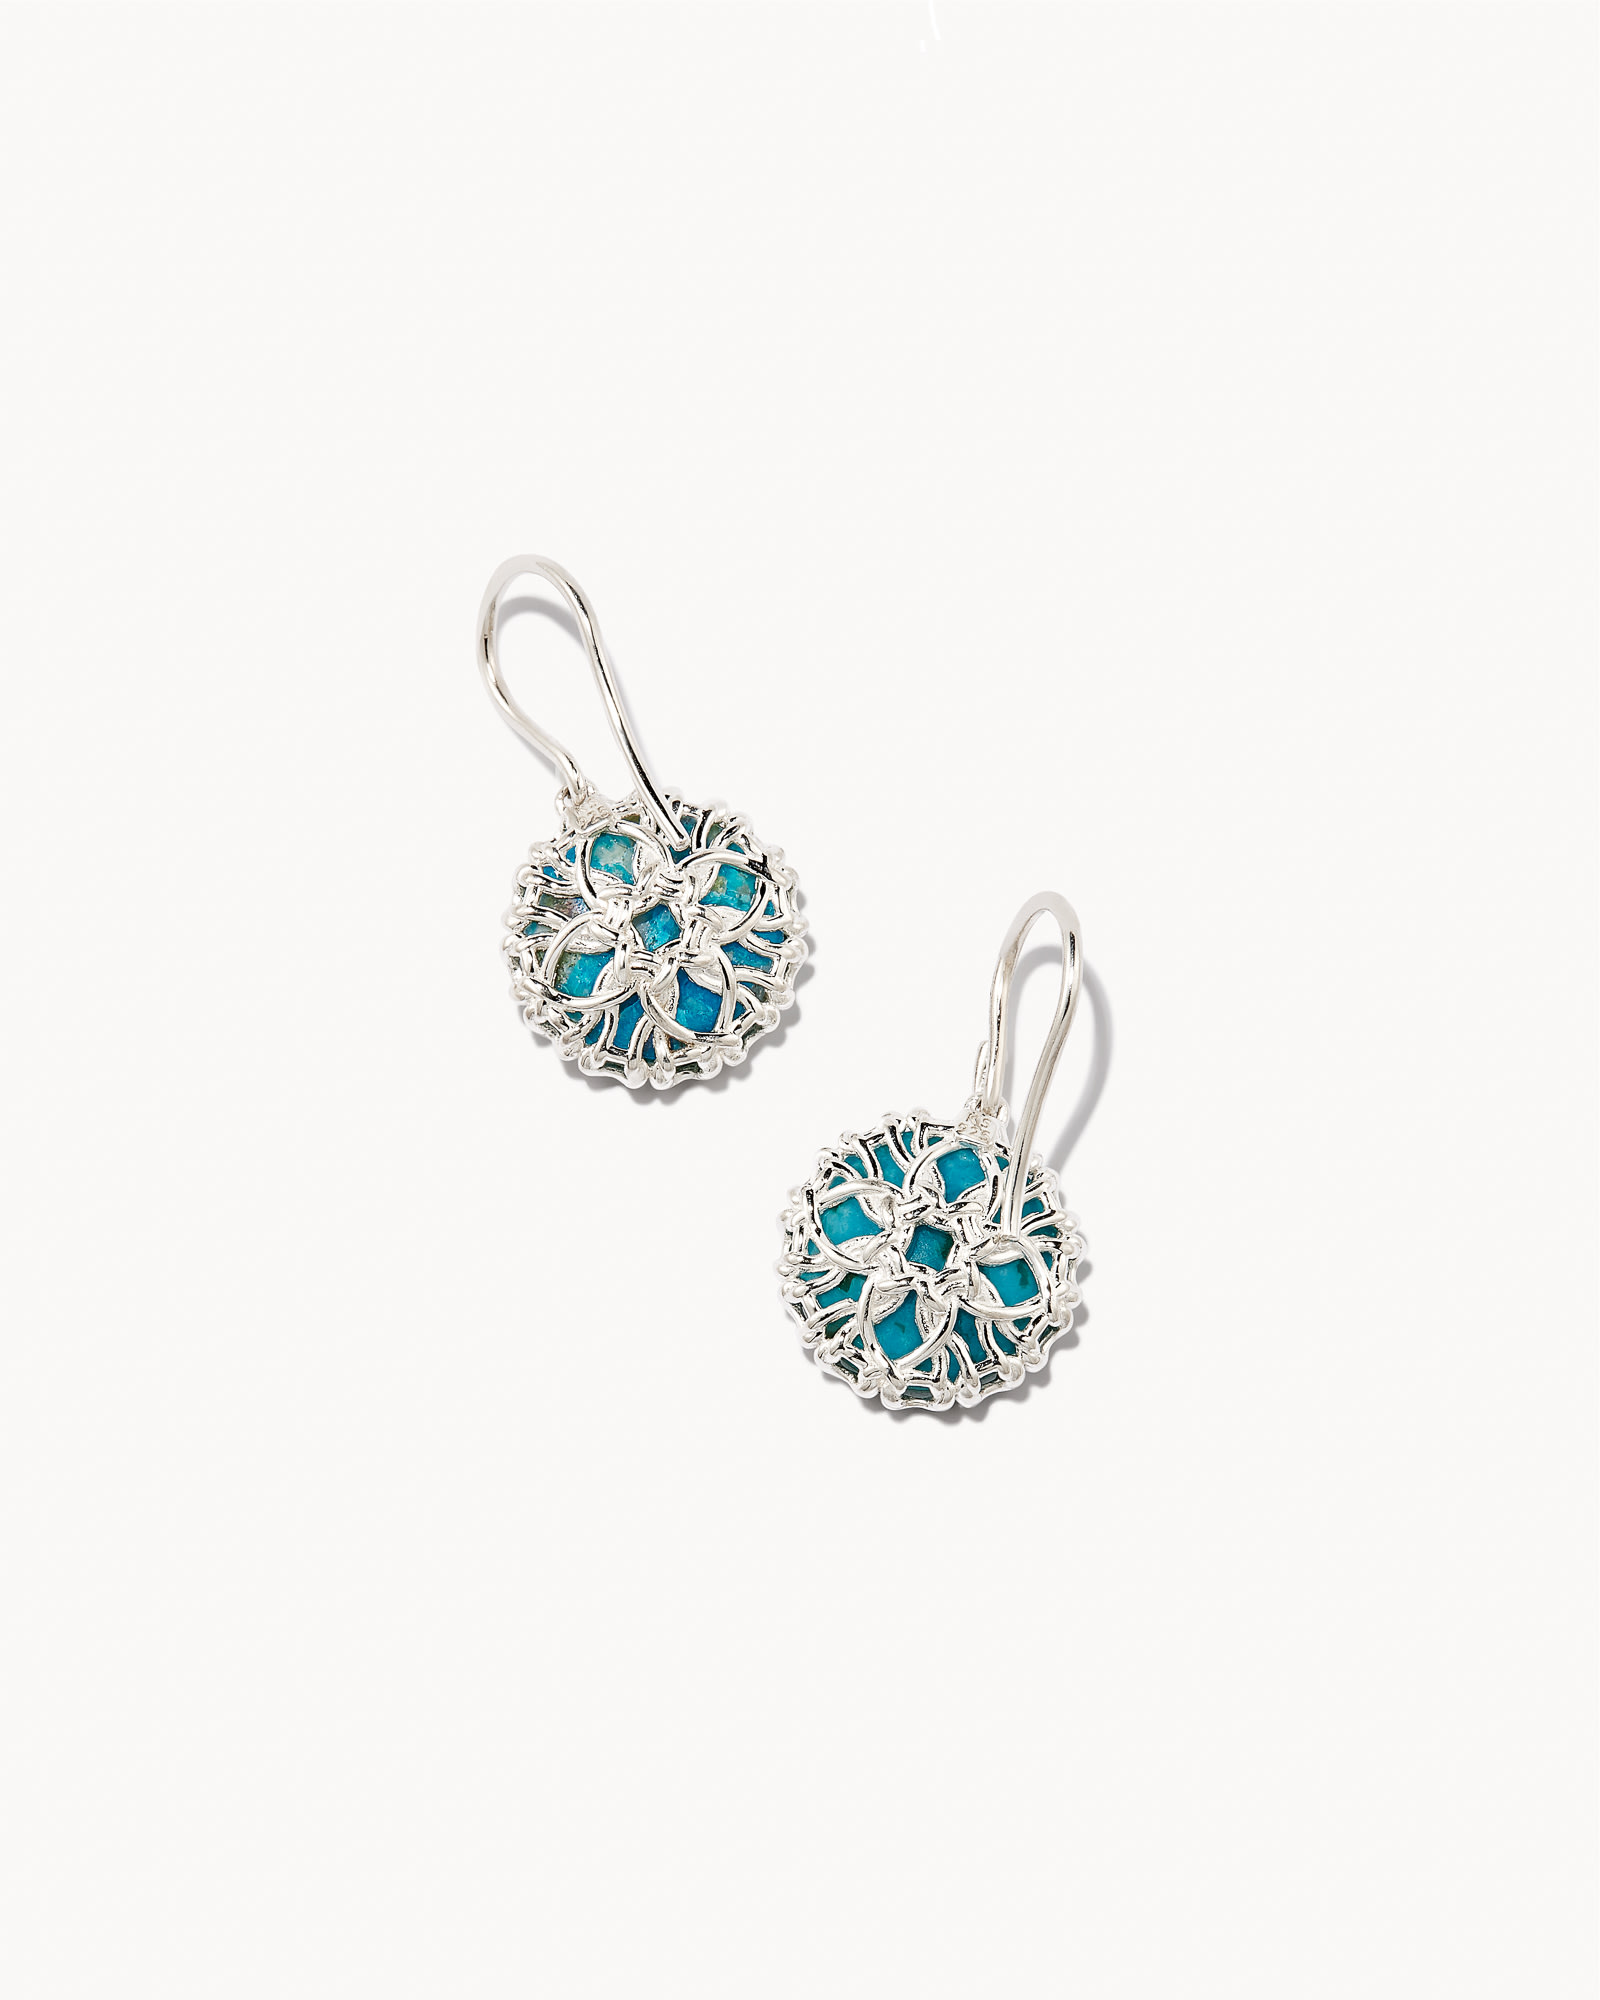 Jane Sterling Silver Drop Earrings in Turquoise